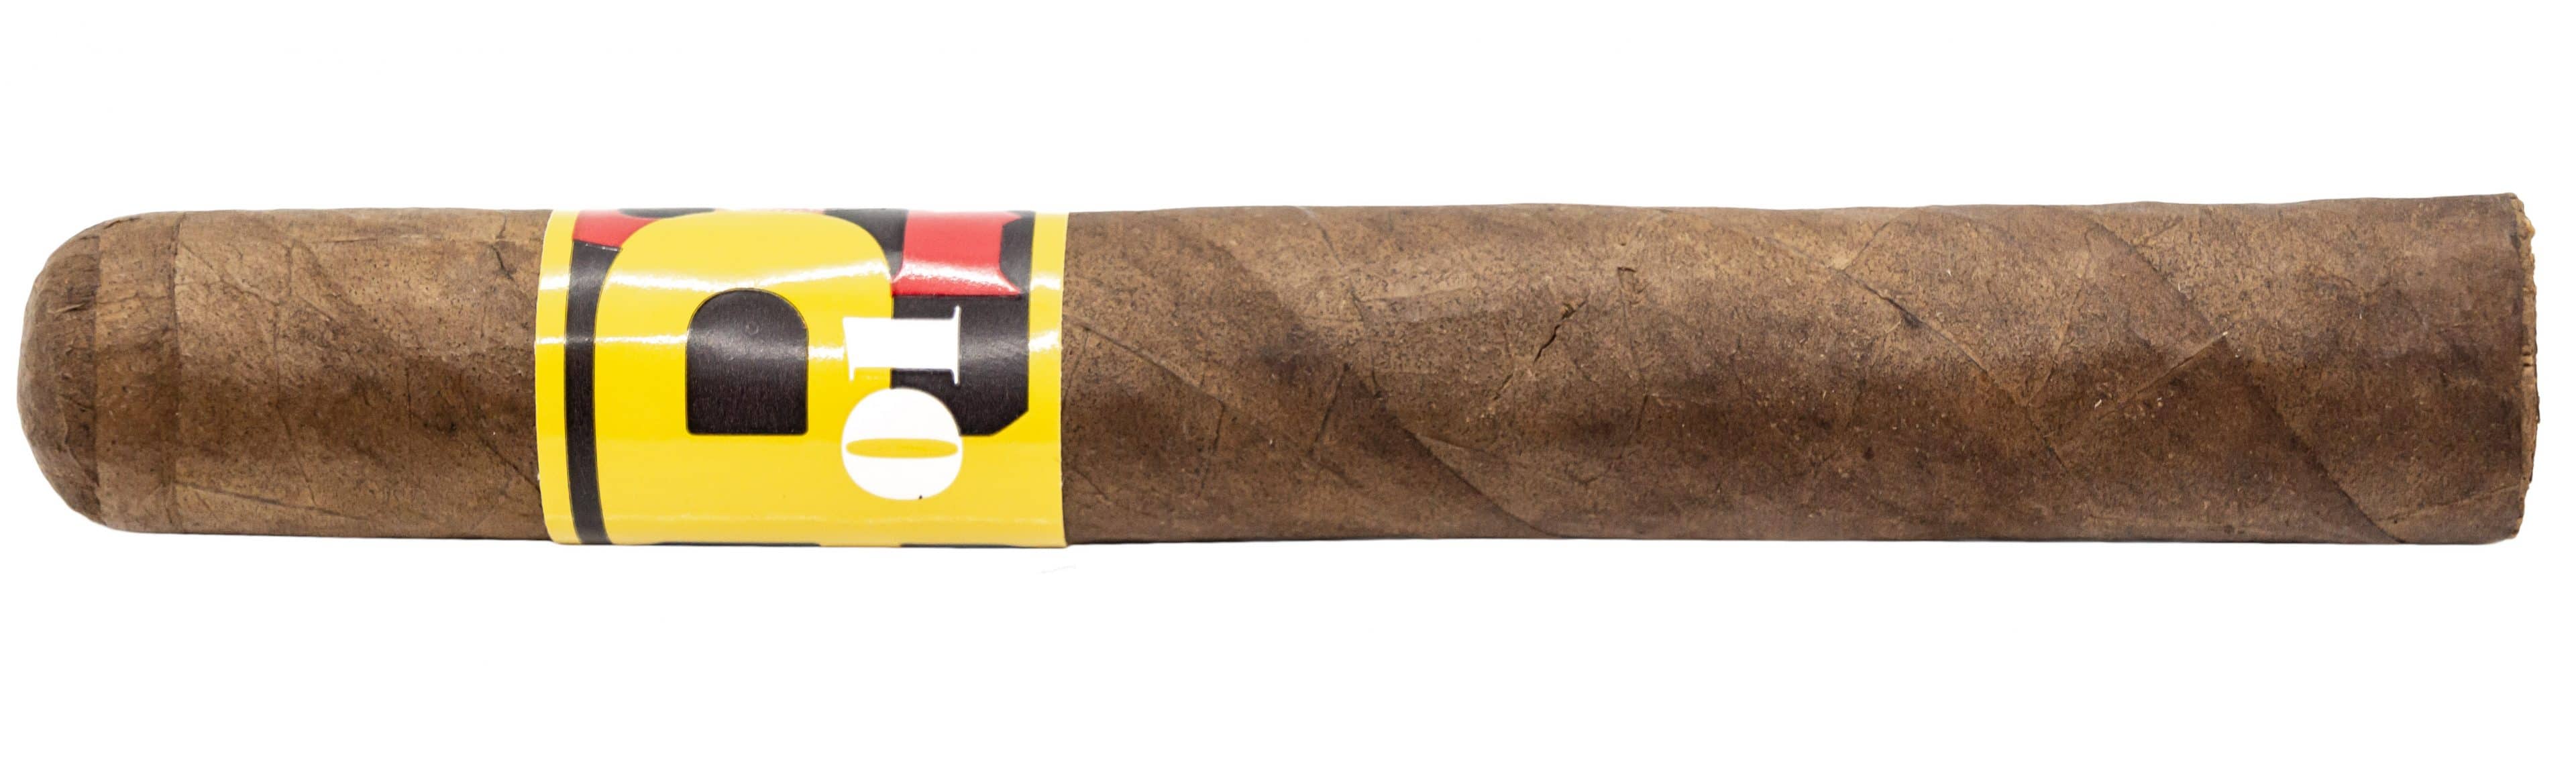 Blind Cigar Review: La Palina | Number 1 Robusto